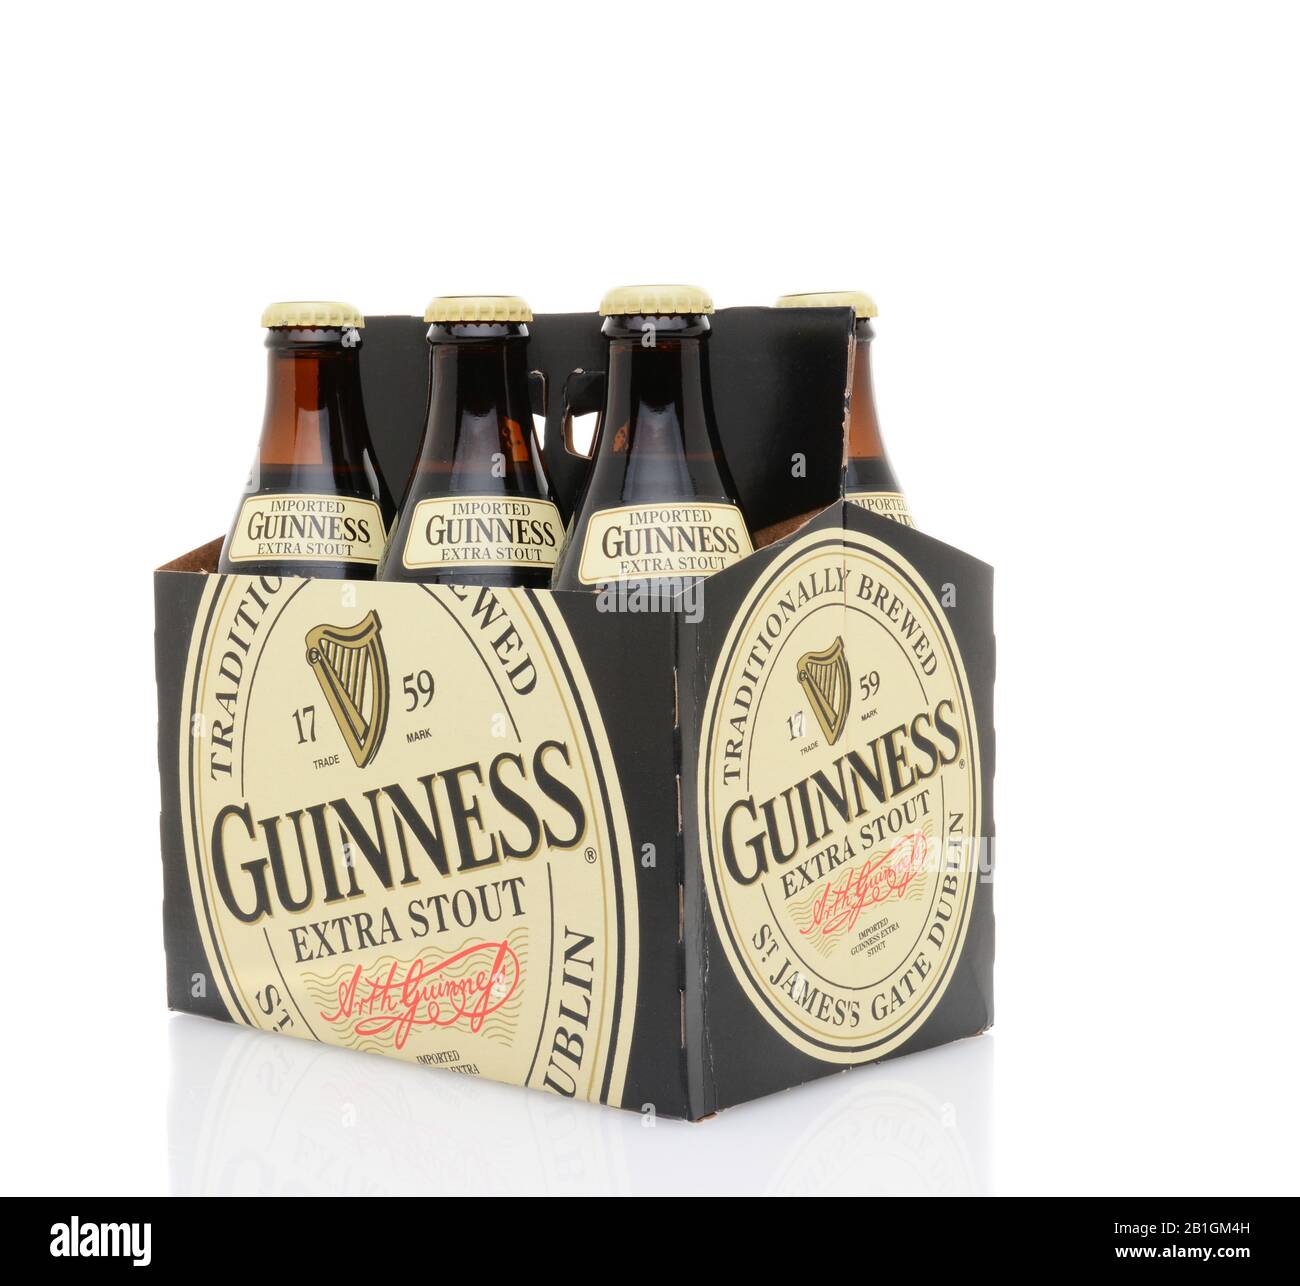 Irvine, CA - 25. MAI 2014: Eine 6-er Packung Guinness Extra Stout. Guinness ist eine der weltweit erfolgreichsten Biermarken mit einem Jahresumsatz von über 850 Mühlen Stockfoto